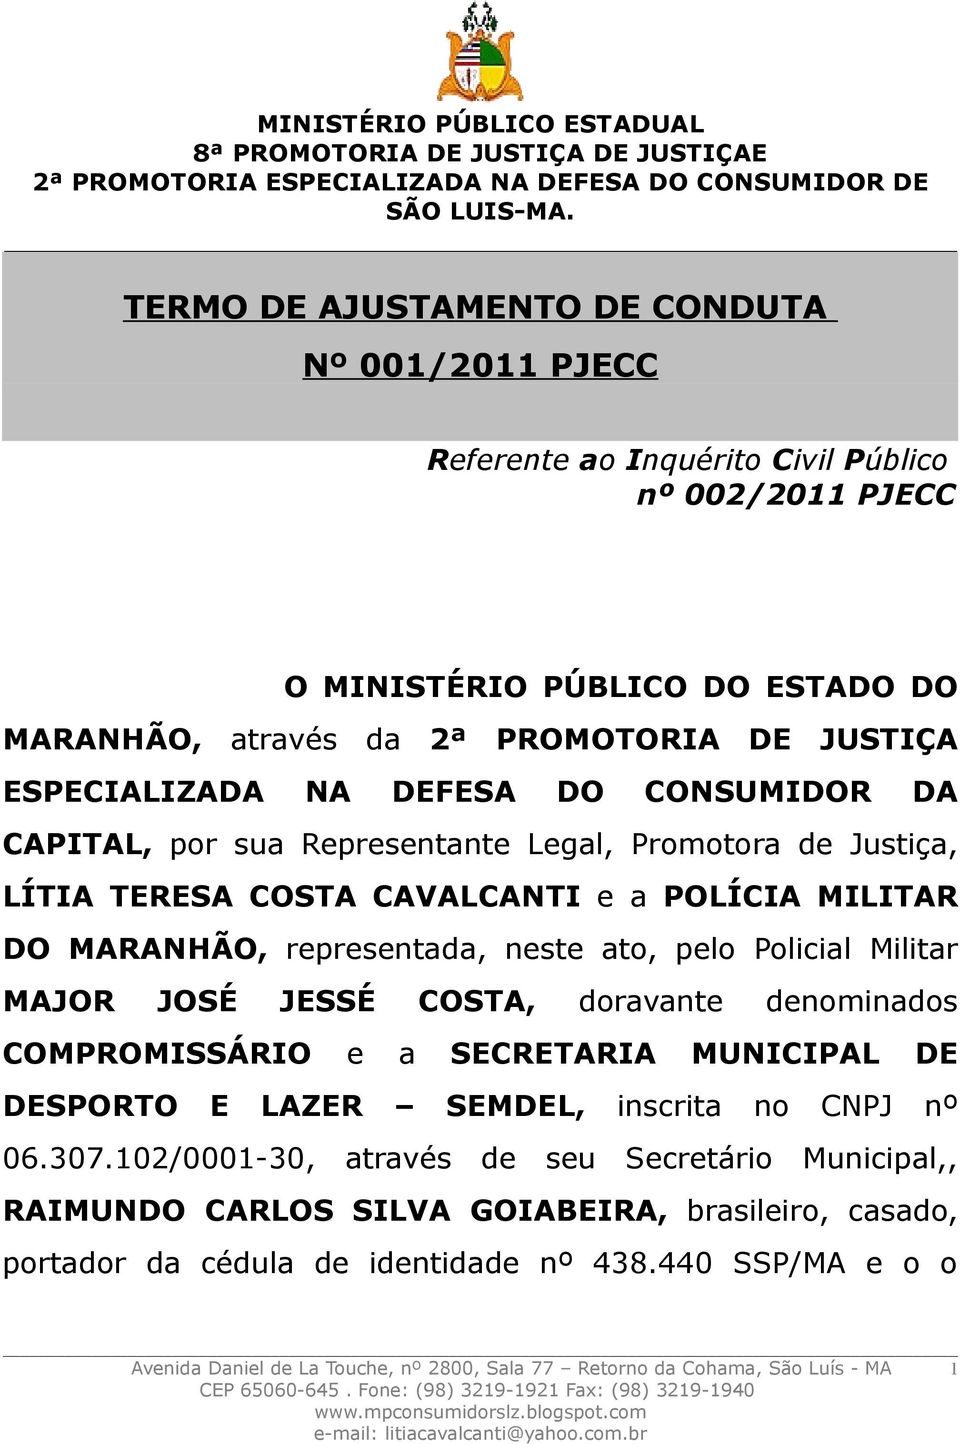 Policial Militar MAJOR JOSÉ JESSÉ COSTA, doravante denominados COMPROMISSÁRIO e a SECRETARIA MUNICIPAL DE DESPORTO E LAZER SEMDEL, inscrita no CNPJ nº 06.307.